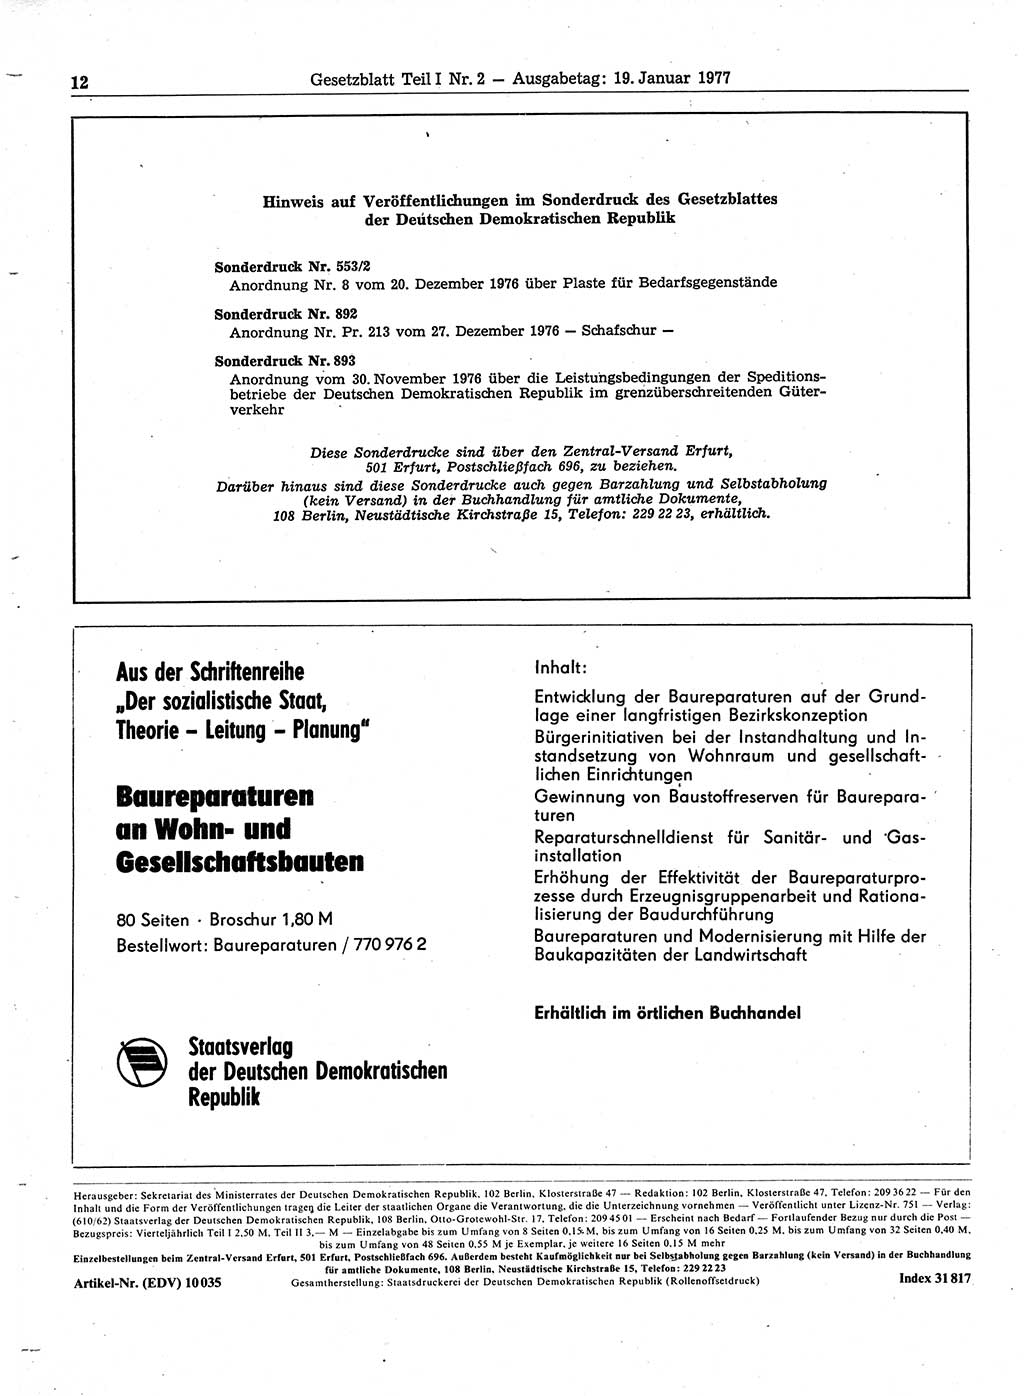 Gesetzblatt (GBl.) der Deutschen Demokratischen Republik (DDR) Teil Ⅰ 1977, Seite 12 (GBl. DDR Ⅰ 1977, S. 12)